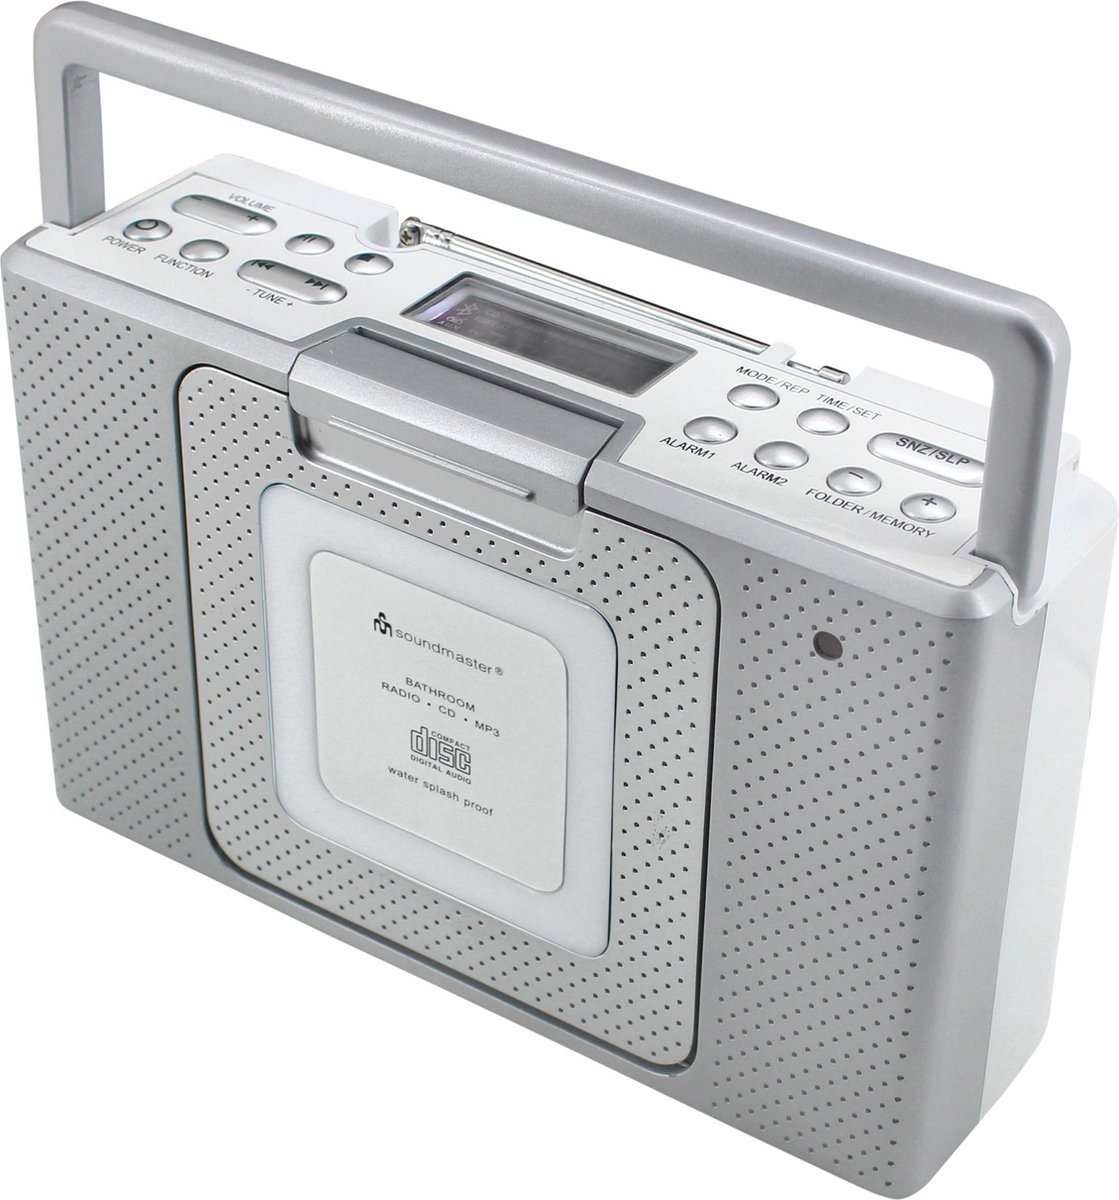 Soundmaster BCD480 - Spatwaterdichte badkamer-/keukenradio met CD en klok